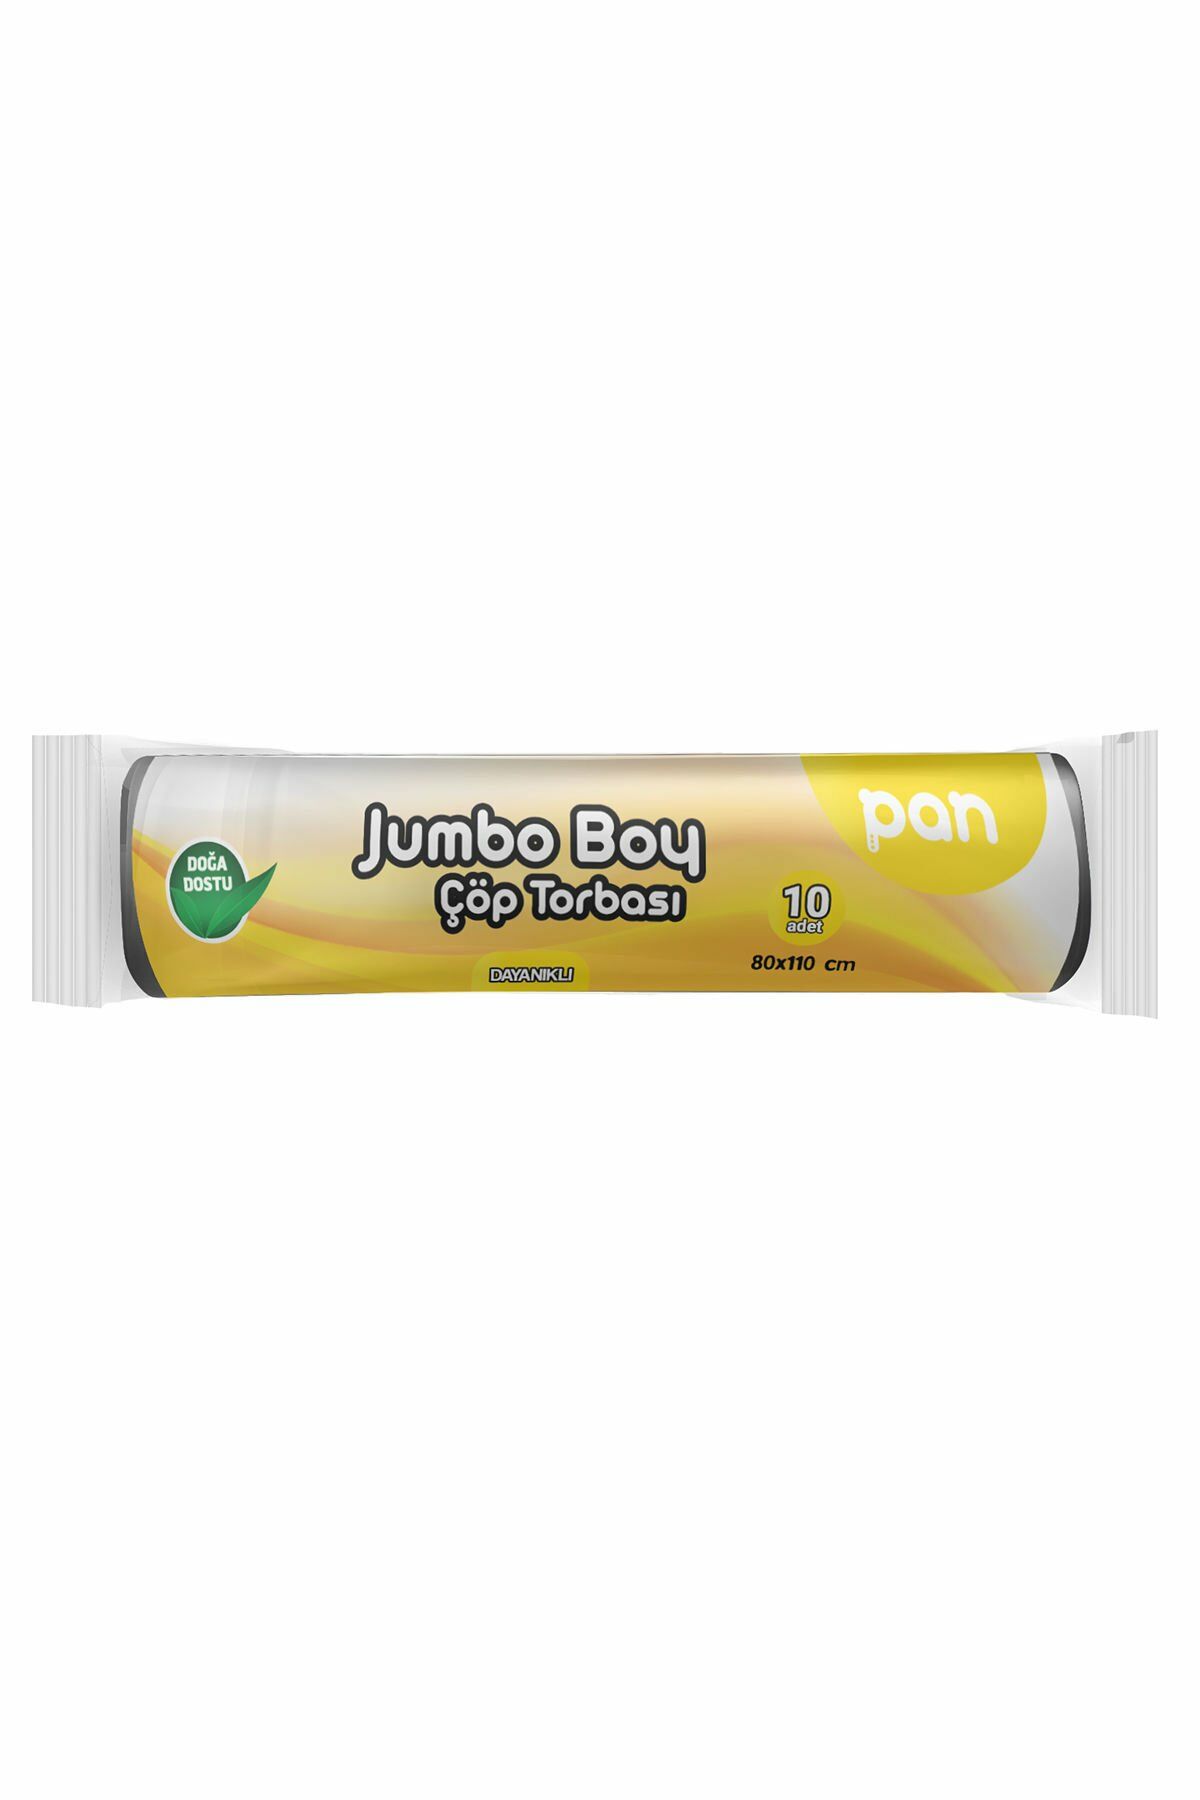 Pan Jumbo Boy Çöp Poşeti 80x110 cm